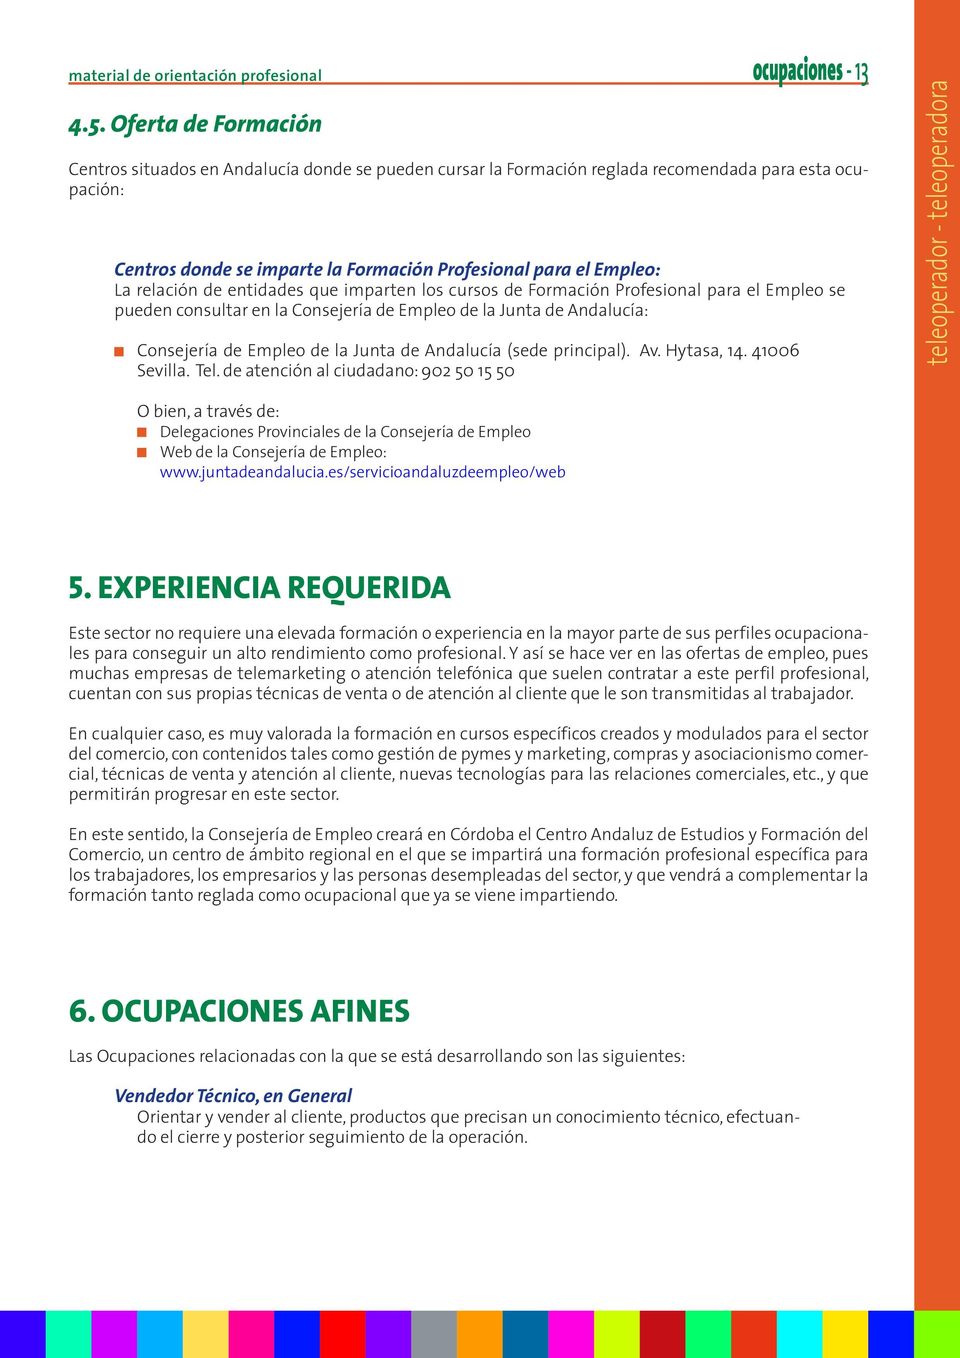 relación de entidades que imparten los cursos de Formación Profesional para el Empleo se pueden consultar en la Consejería de Empleo de la Junta de Andalucía: Consejería de Empleo de la Junta de